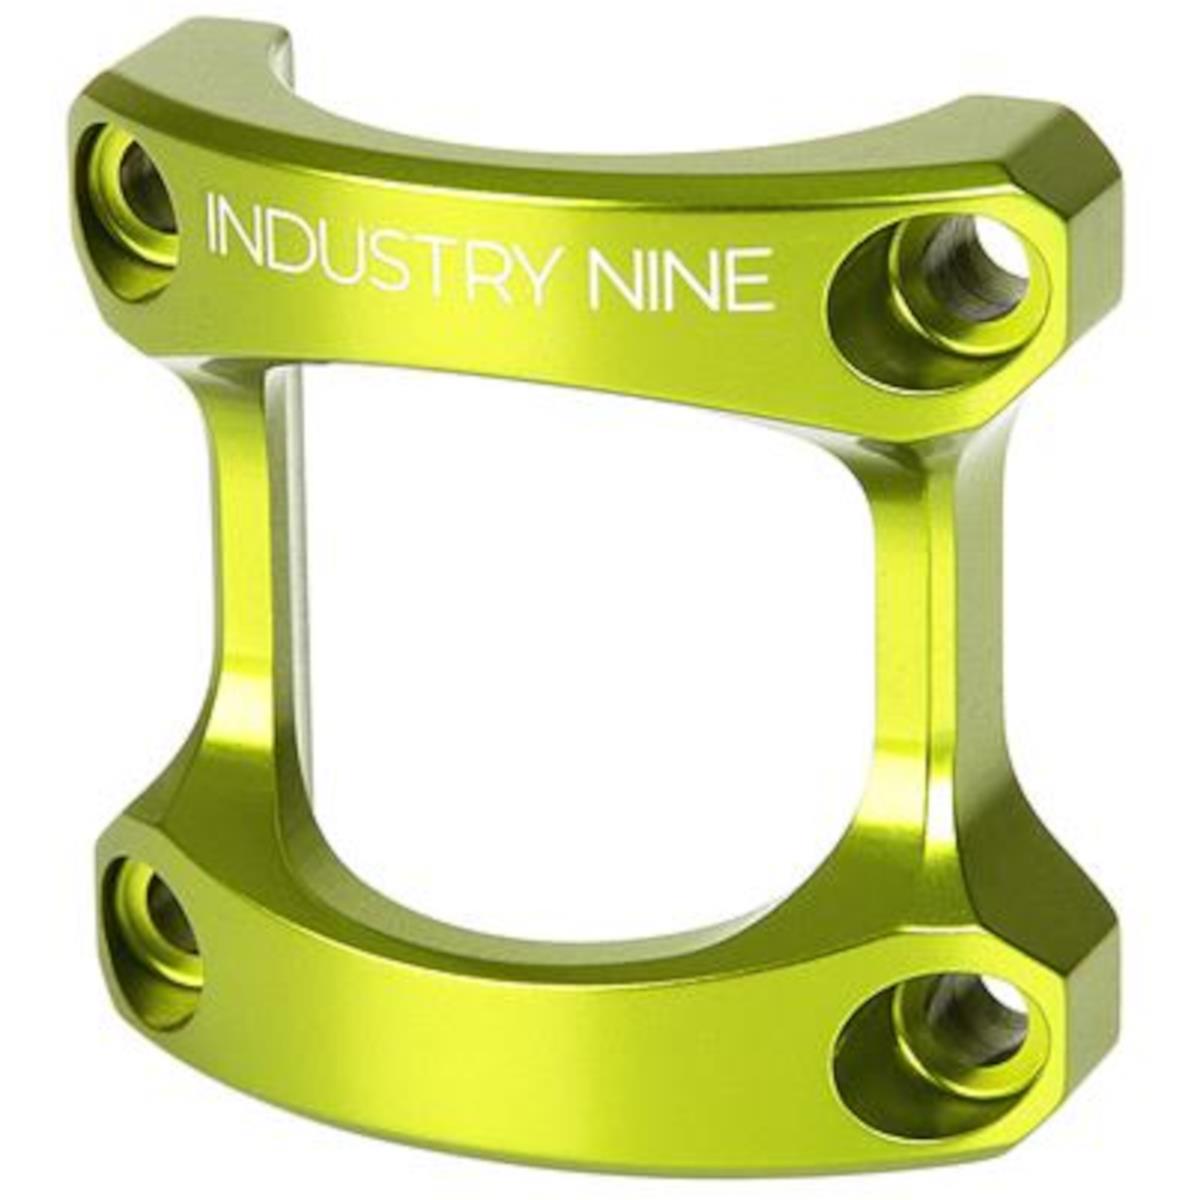 Industry Nine Plaque de potence  pour A35 Potence, Lime